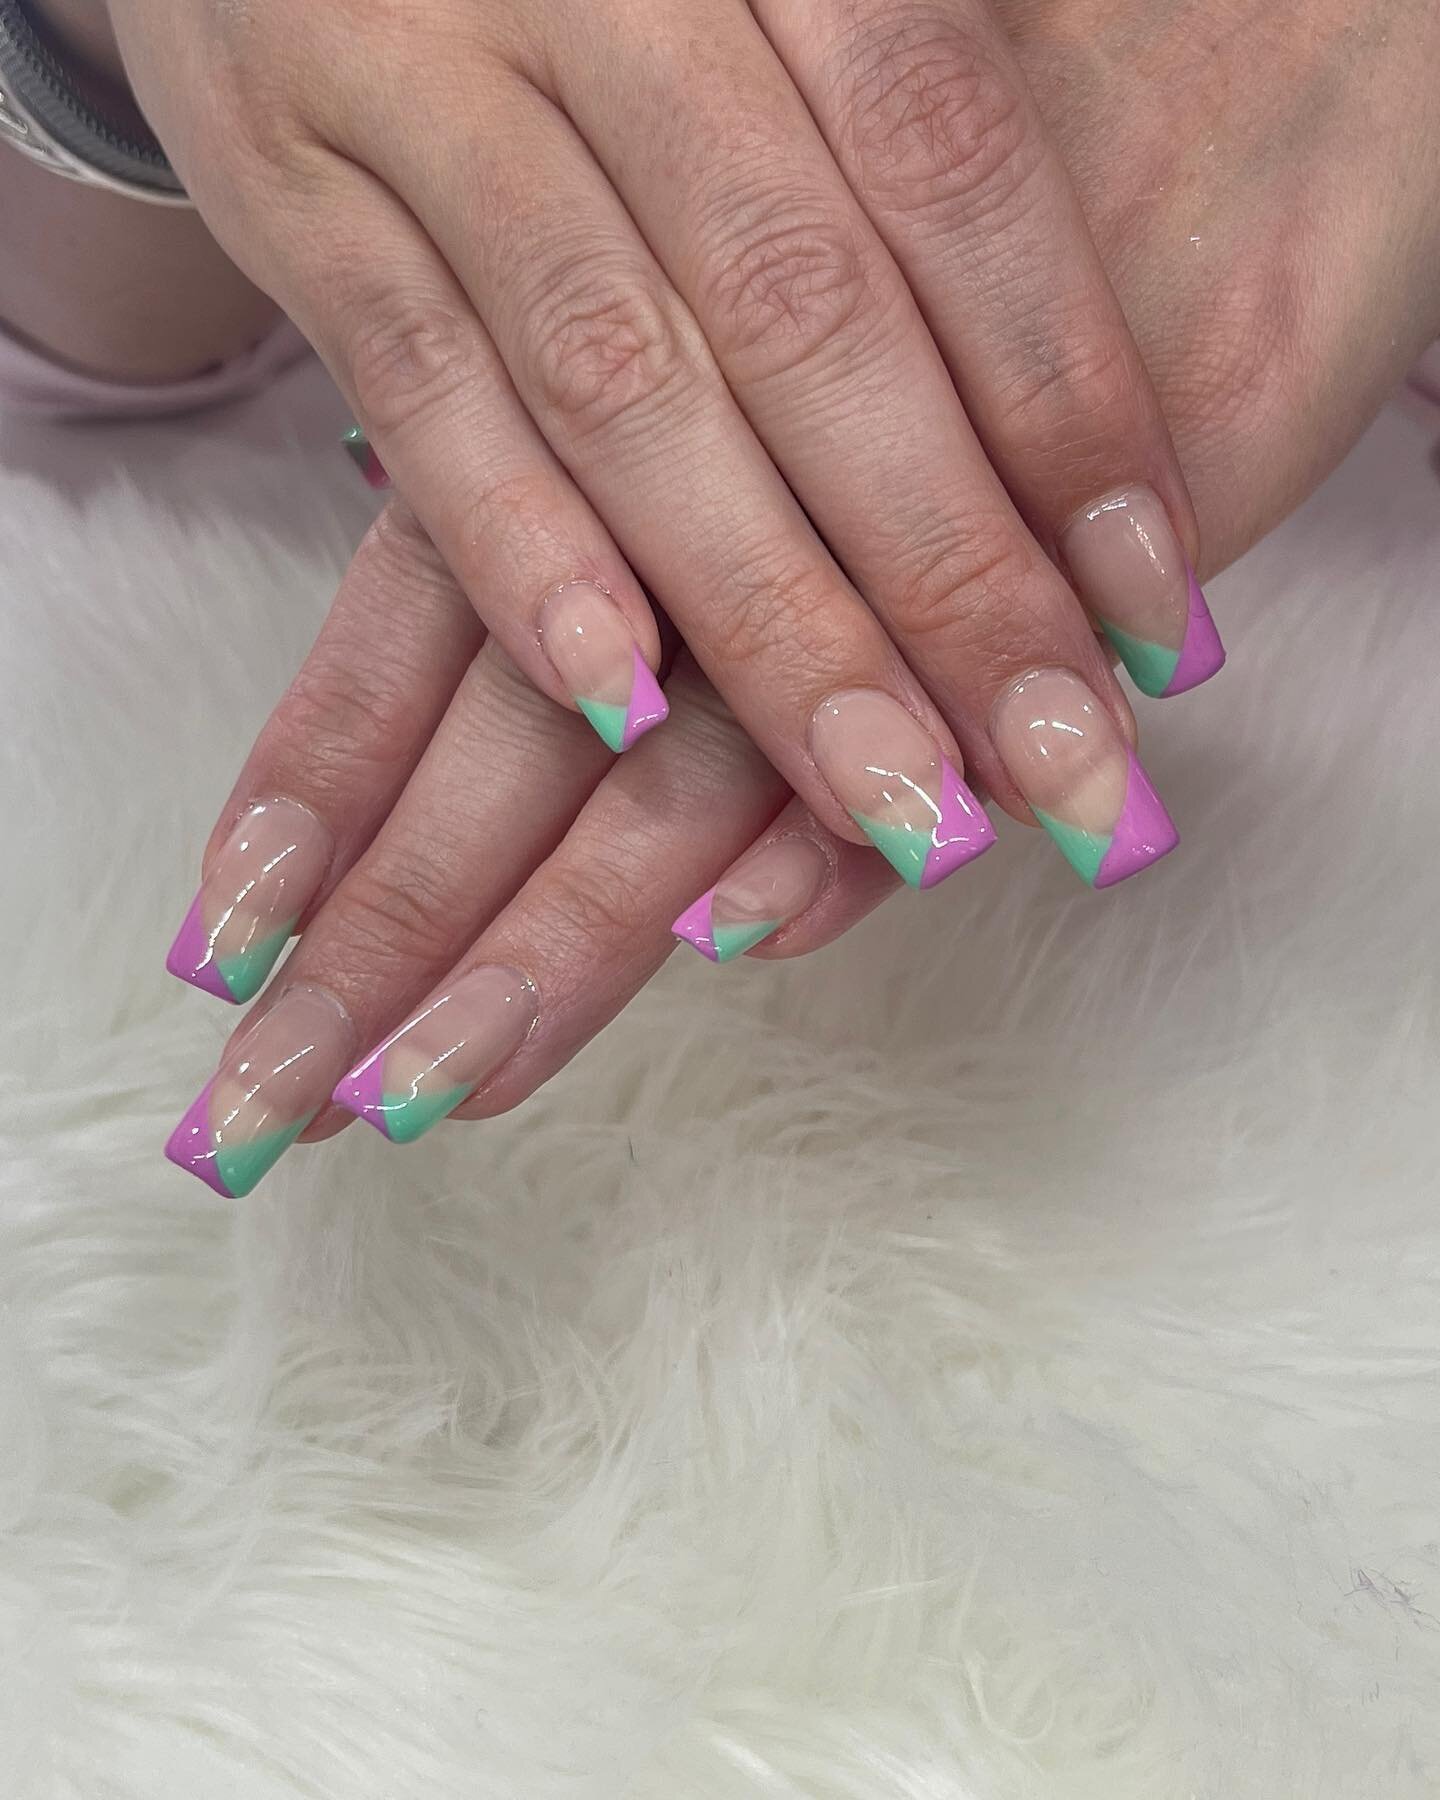 Green-purple nails 💅 
.
#nailsbyalex ⁣
.⁣
.⁣
.⁣
.⁣
.⁣
#johnscreeknail #manicure #nail #nailcare #naildesigns #nailedit #nailideas #nailitdaily #nailjunkie #nailpolish #nailreels #nailsalon #nailsnailsnails #nailsofinsta #nailsofinstagram #nailsofthe